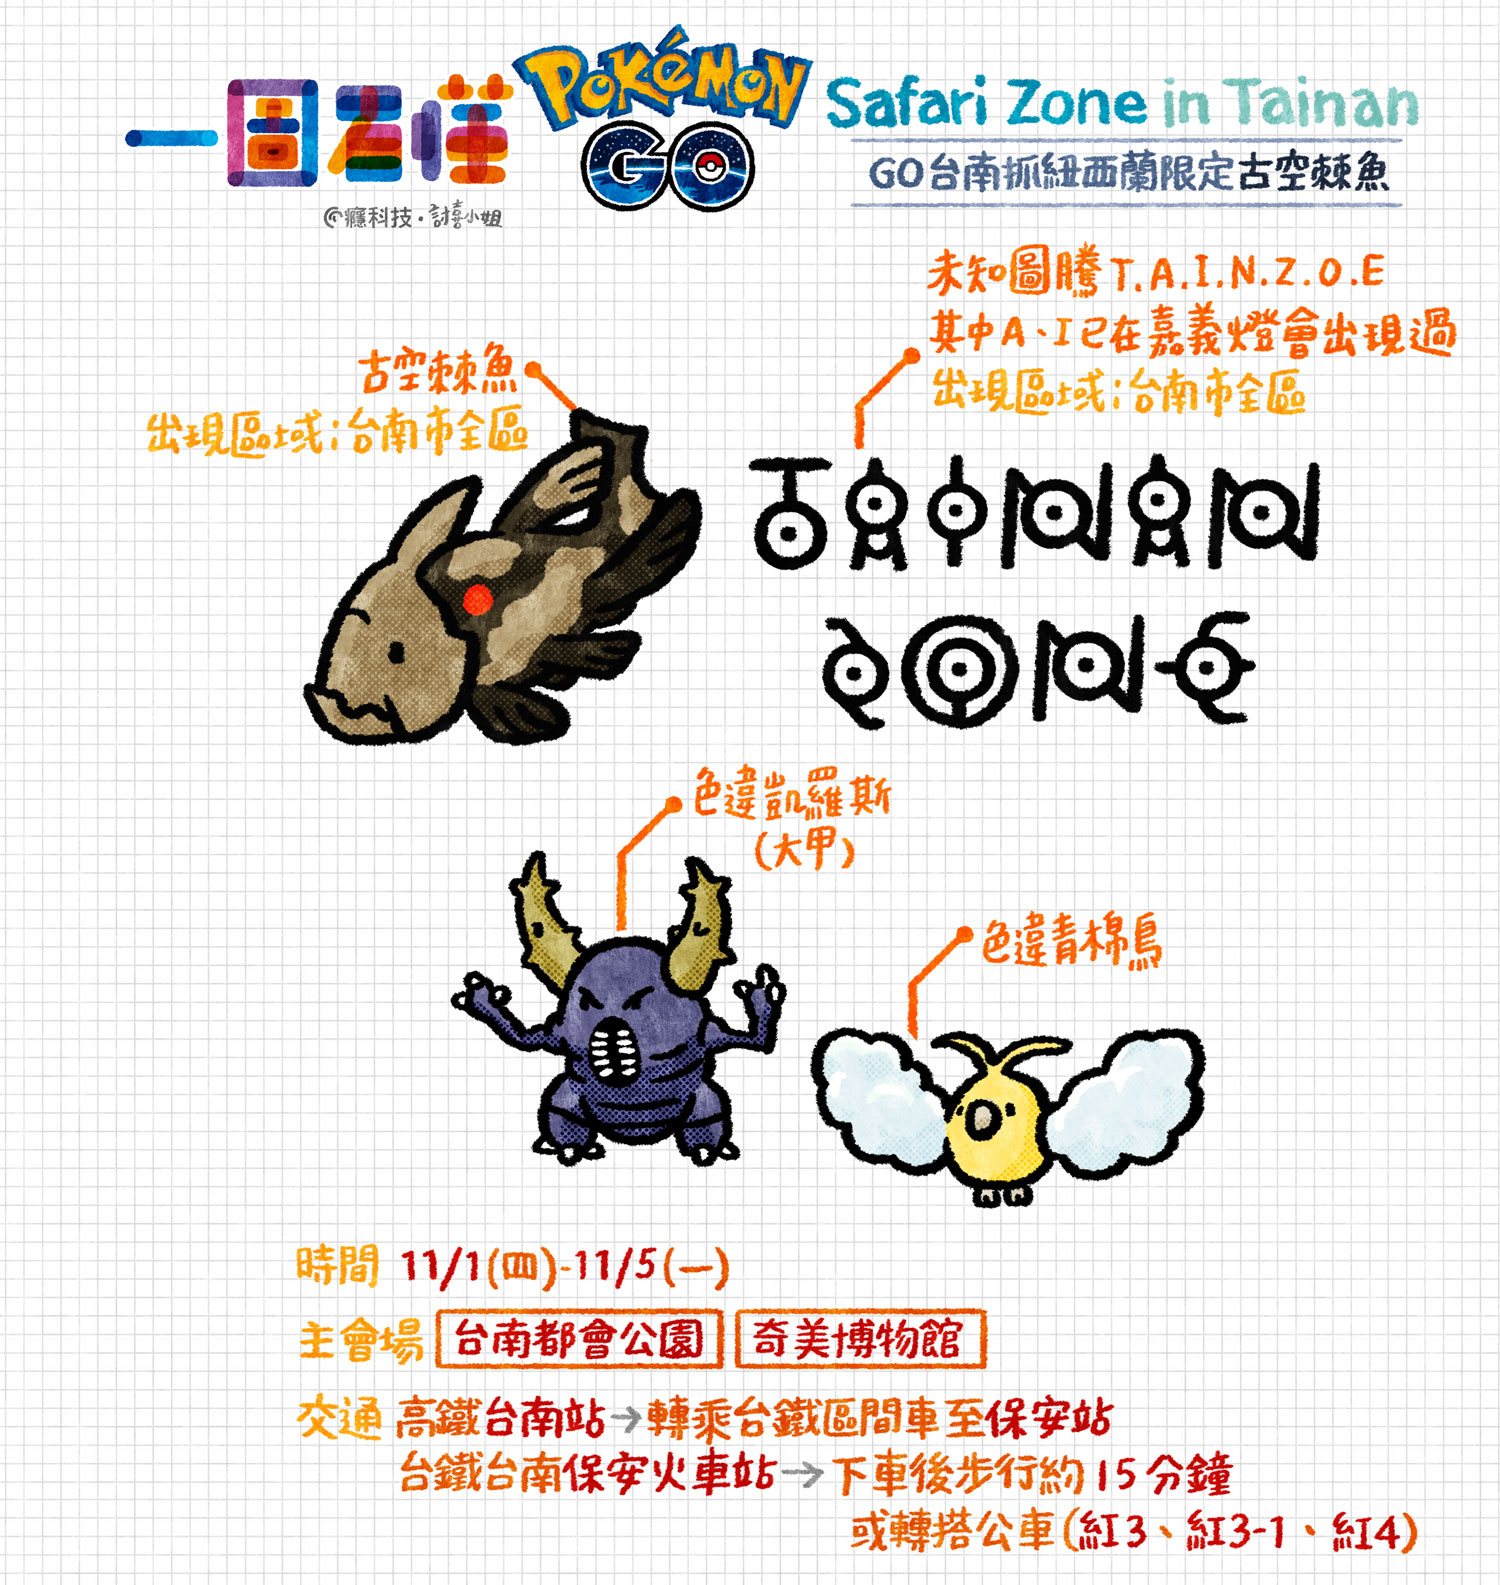 一图看懂 pokemon go safari zone在台南!来抓古空棘鱼吧